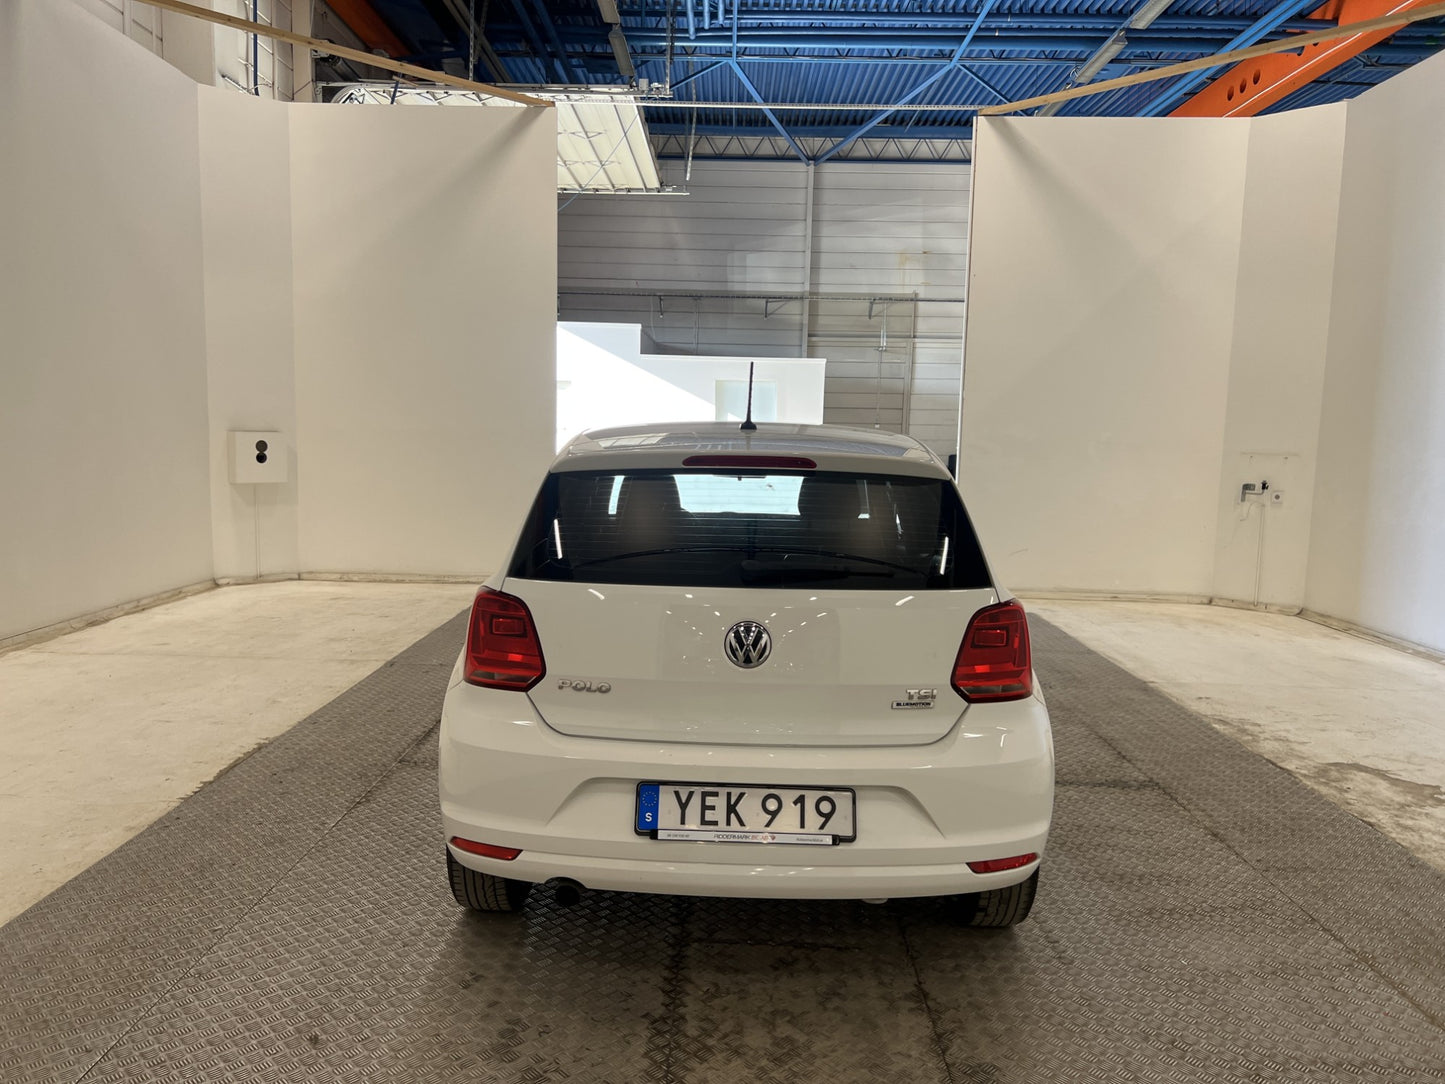 Volkswagen Polo 1.2 TSI 90hk Låg skatt Välservad 0,48l/mil